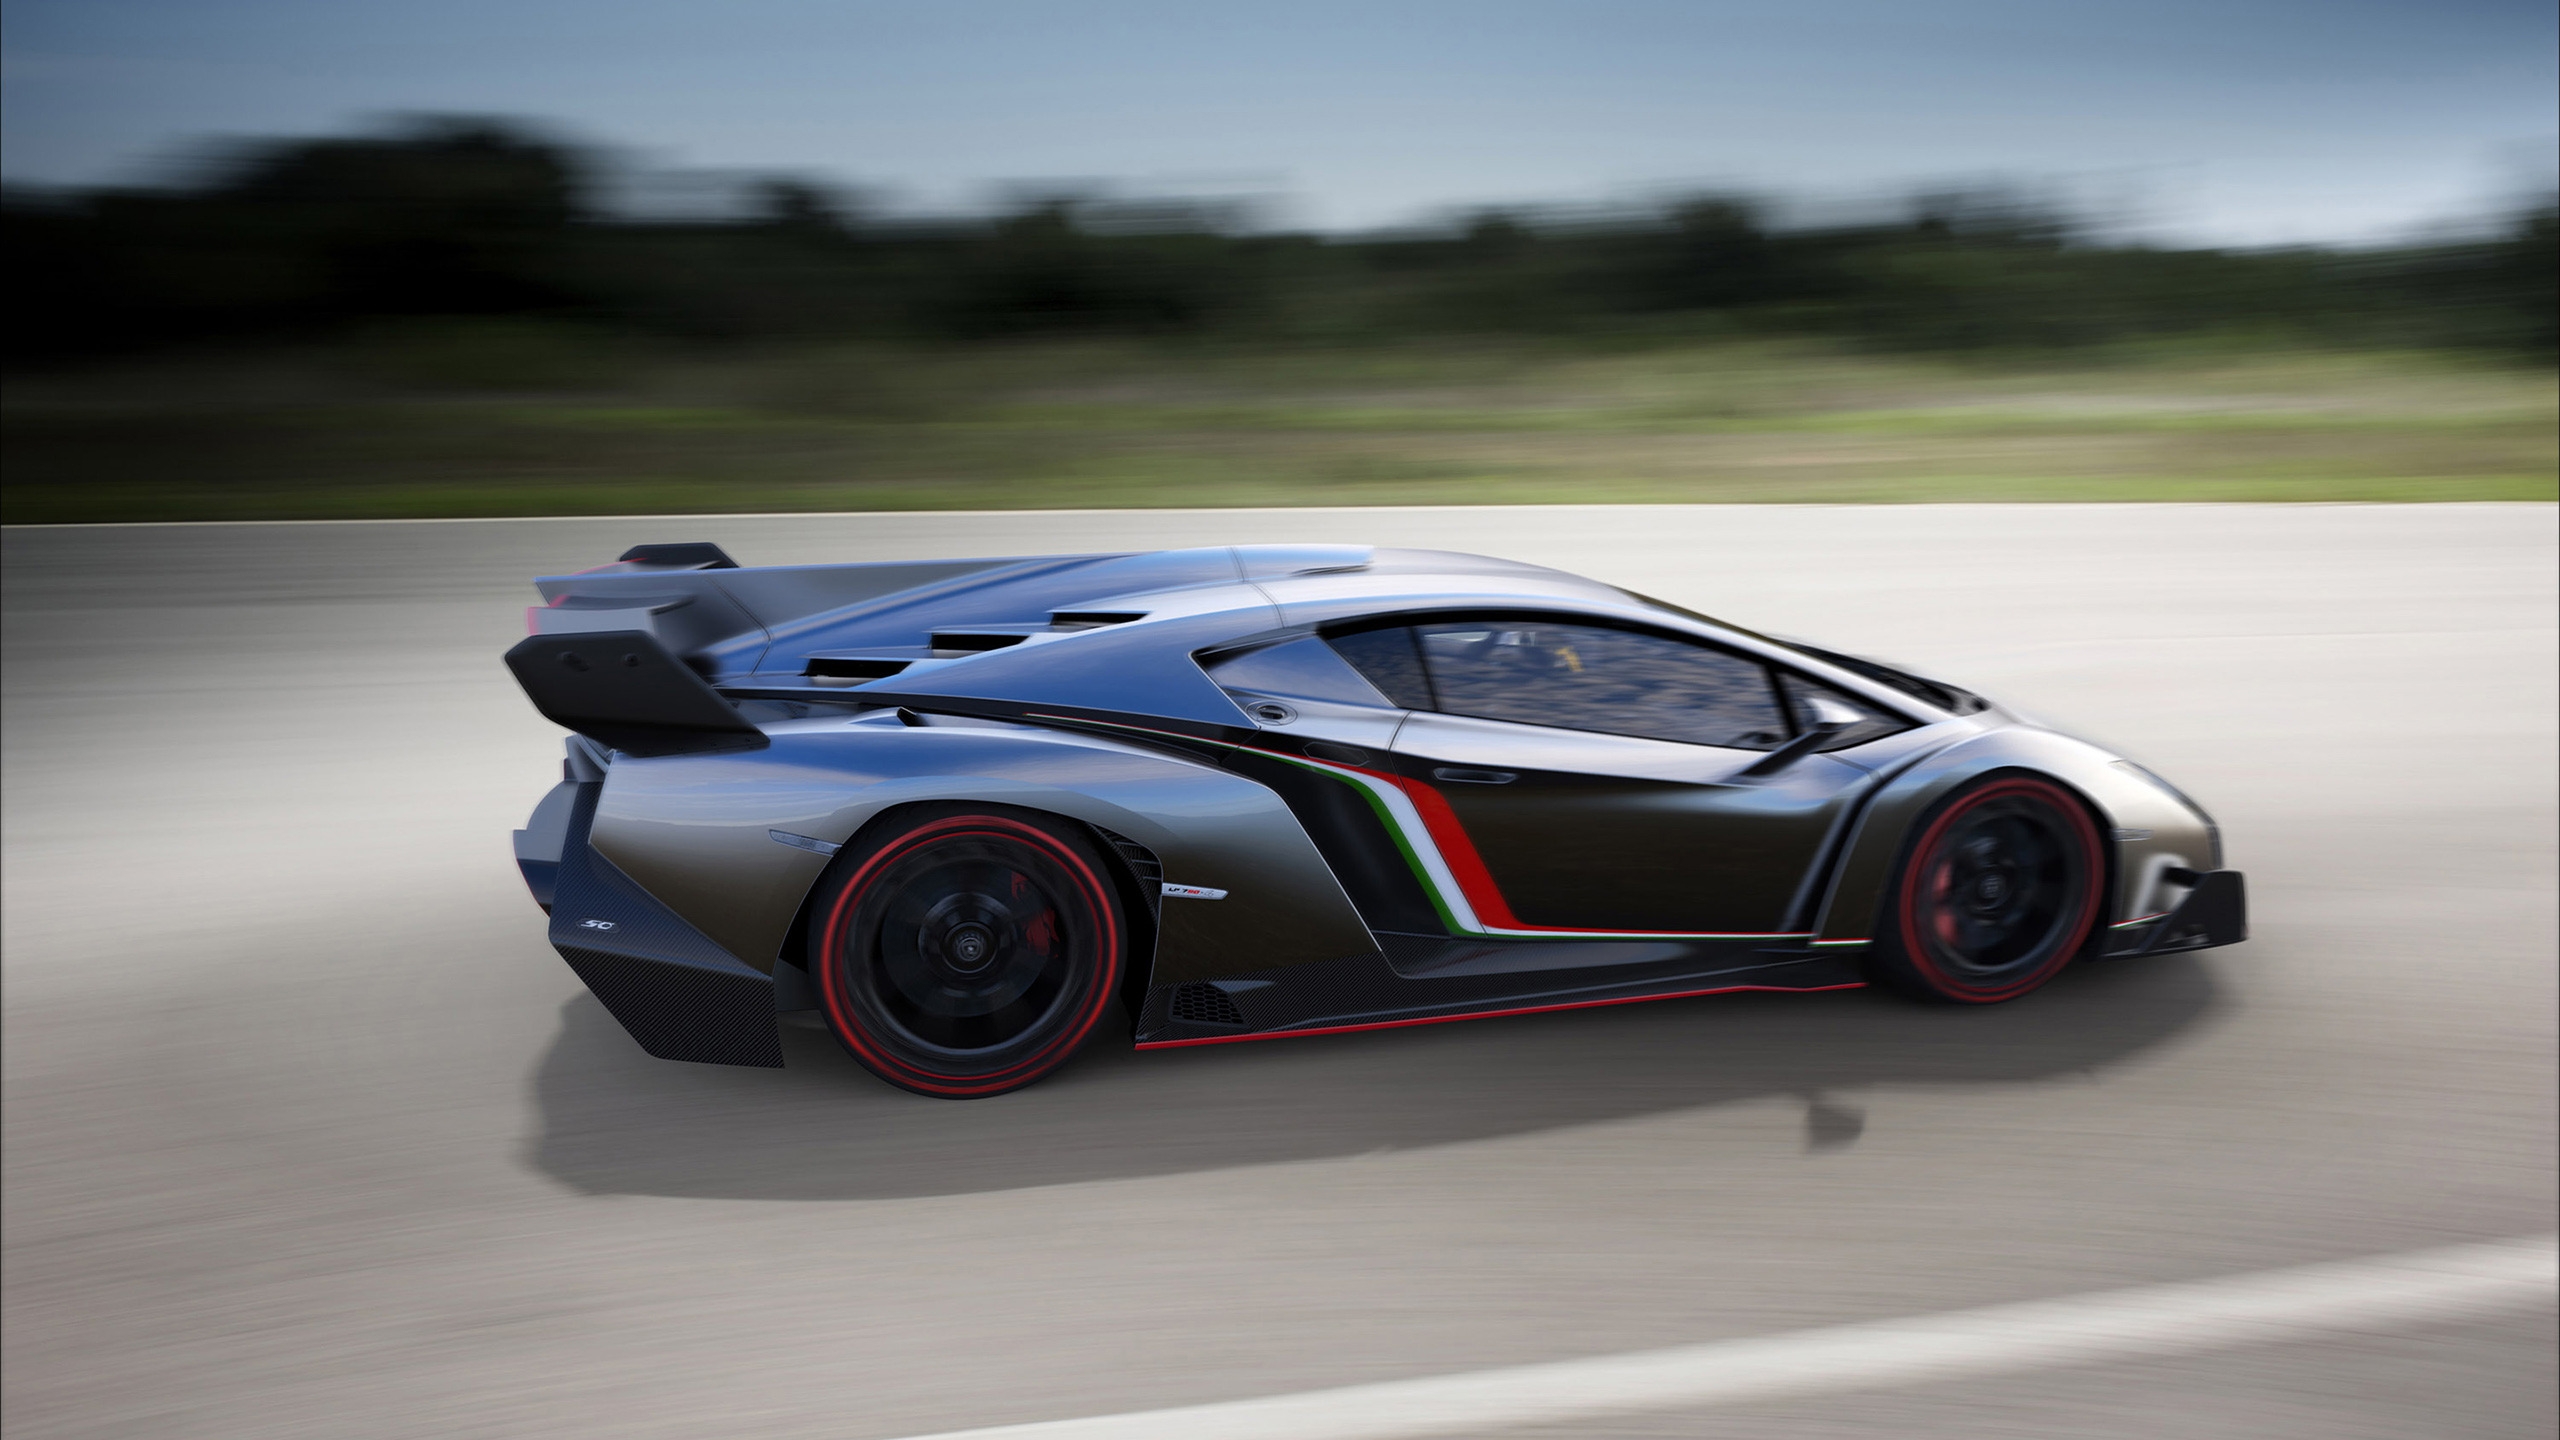 Lamborghini Veneno Speed for 2560x1440 HDTV resolution